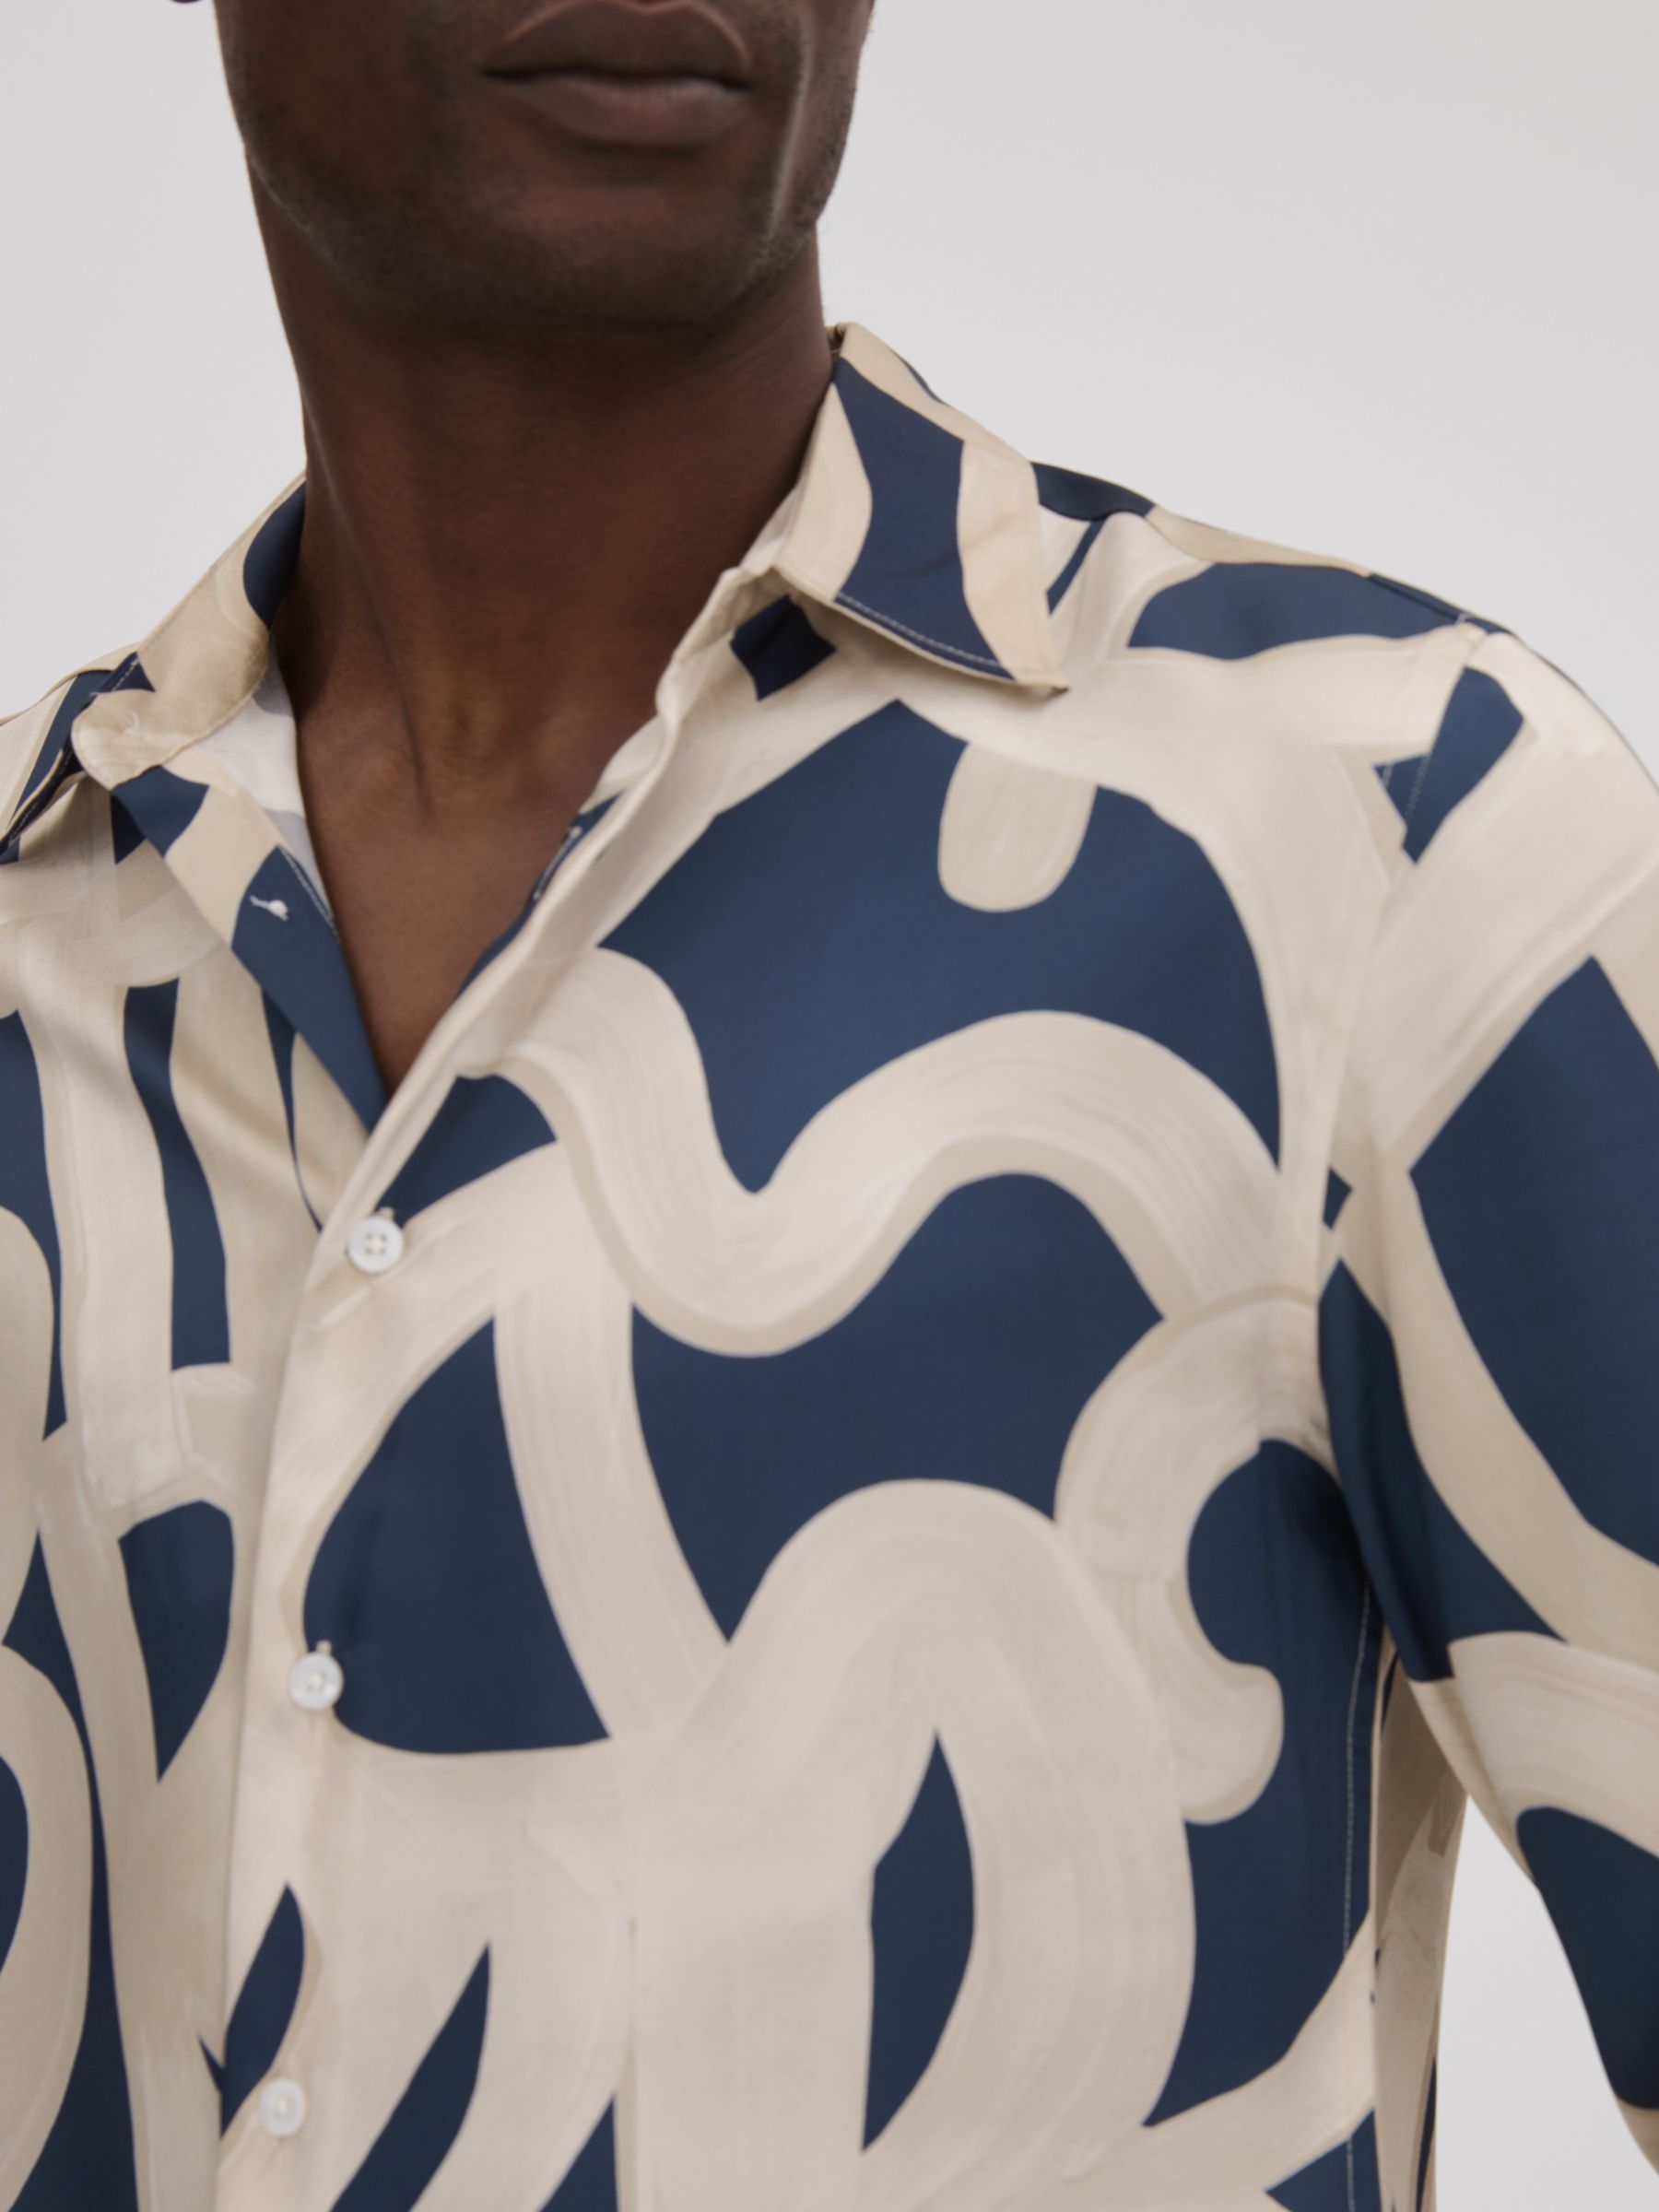 Reiss Jude Long Sleeve Painted Print Shirt, Navy/Ecru, M